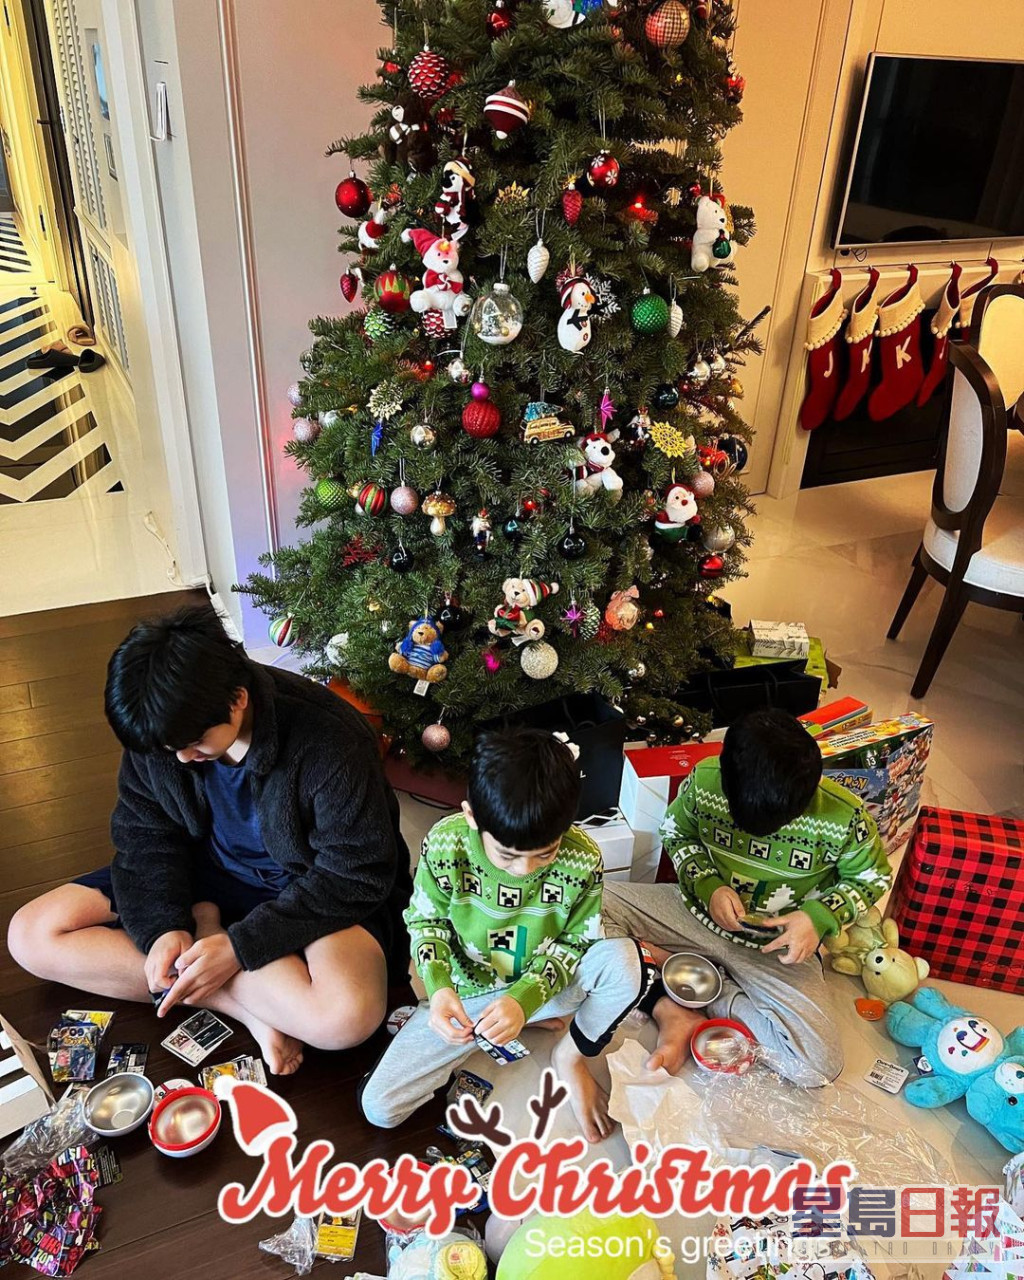 林志颖上载三子的照片祝贺圣诞。